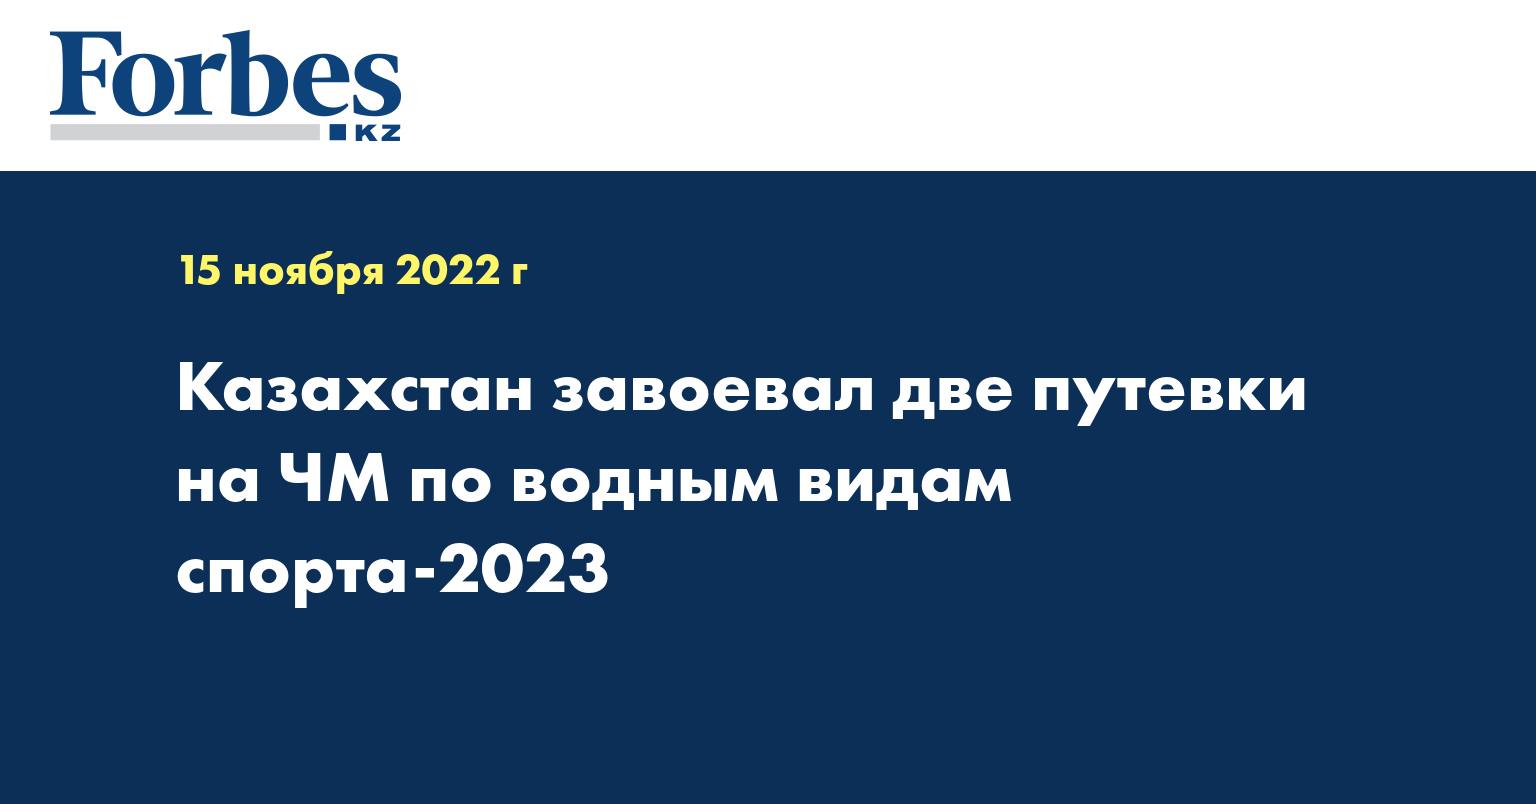 Казахстан завоевал две путевки на ЧМ по водным видам спорта-2023